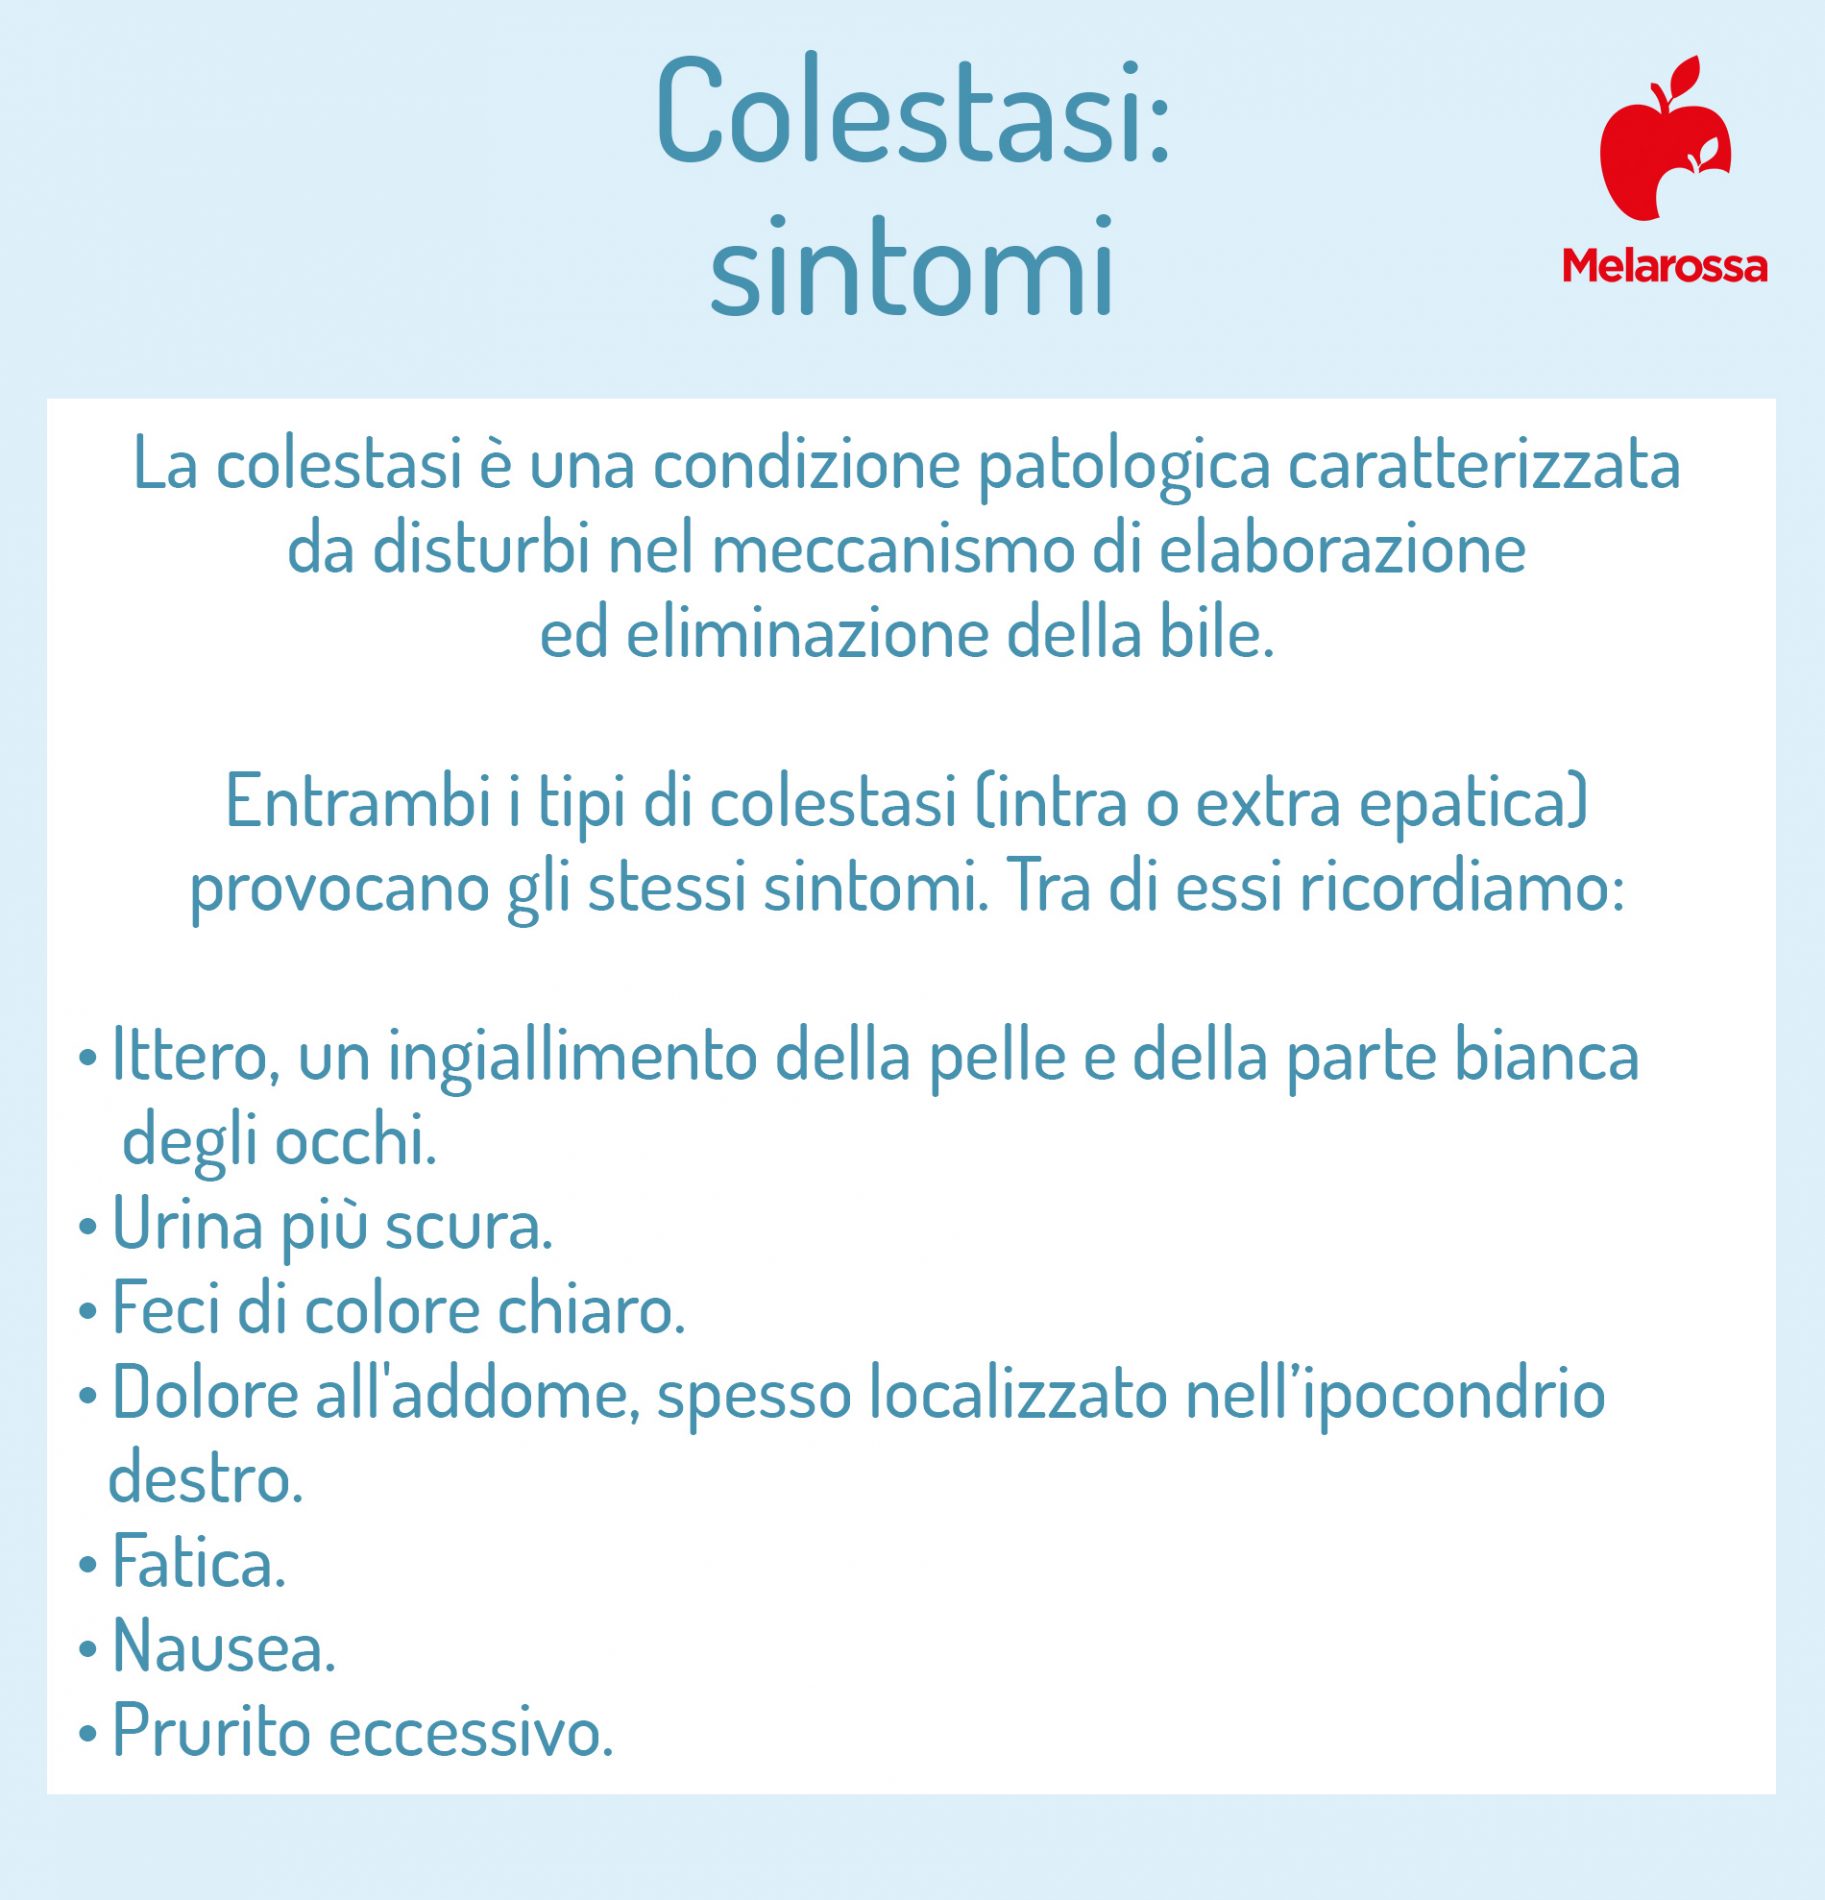 colestasi: sintomi